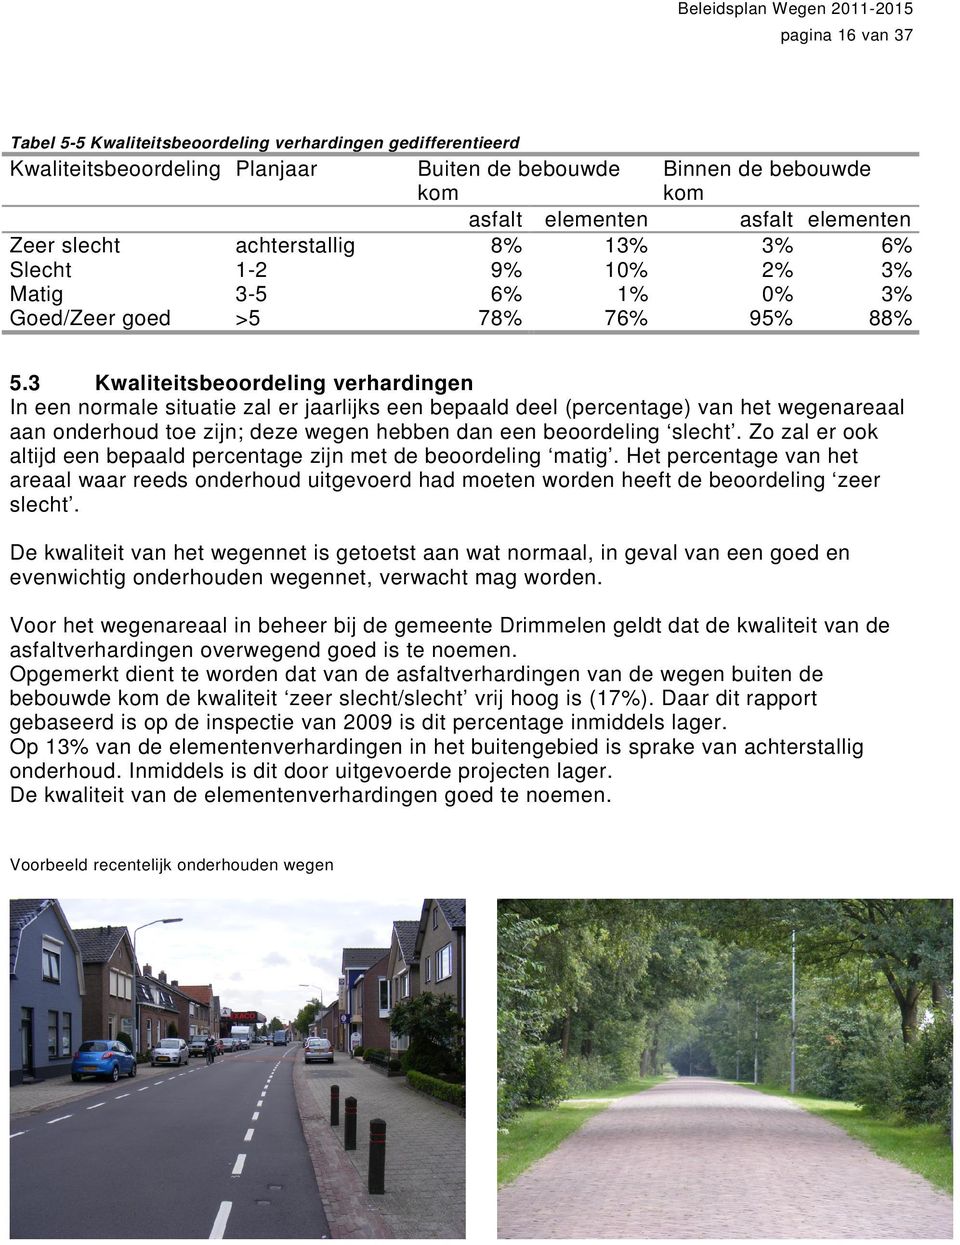 3 Kwaliteitsbeoordeling verhardingen In een normale situatie zal er jaarlijks een bepaald deel (percentage) van het wegenareaal aan onderhoud toe zijn; deze wegen hebben dan een beoordeling slecht.